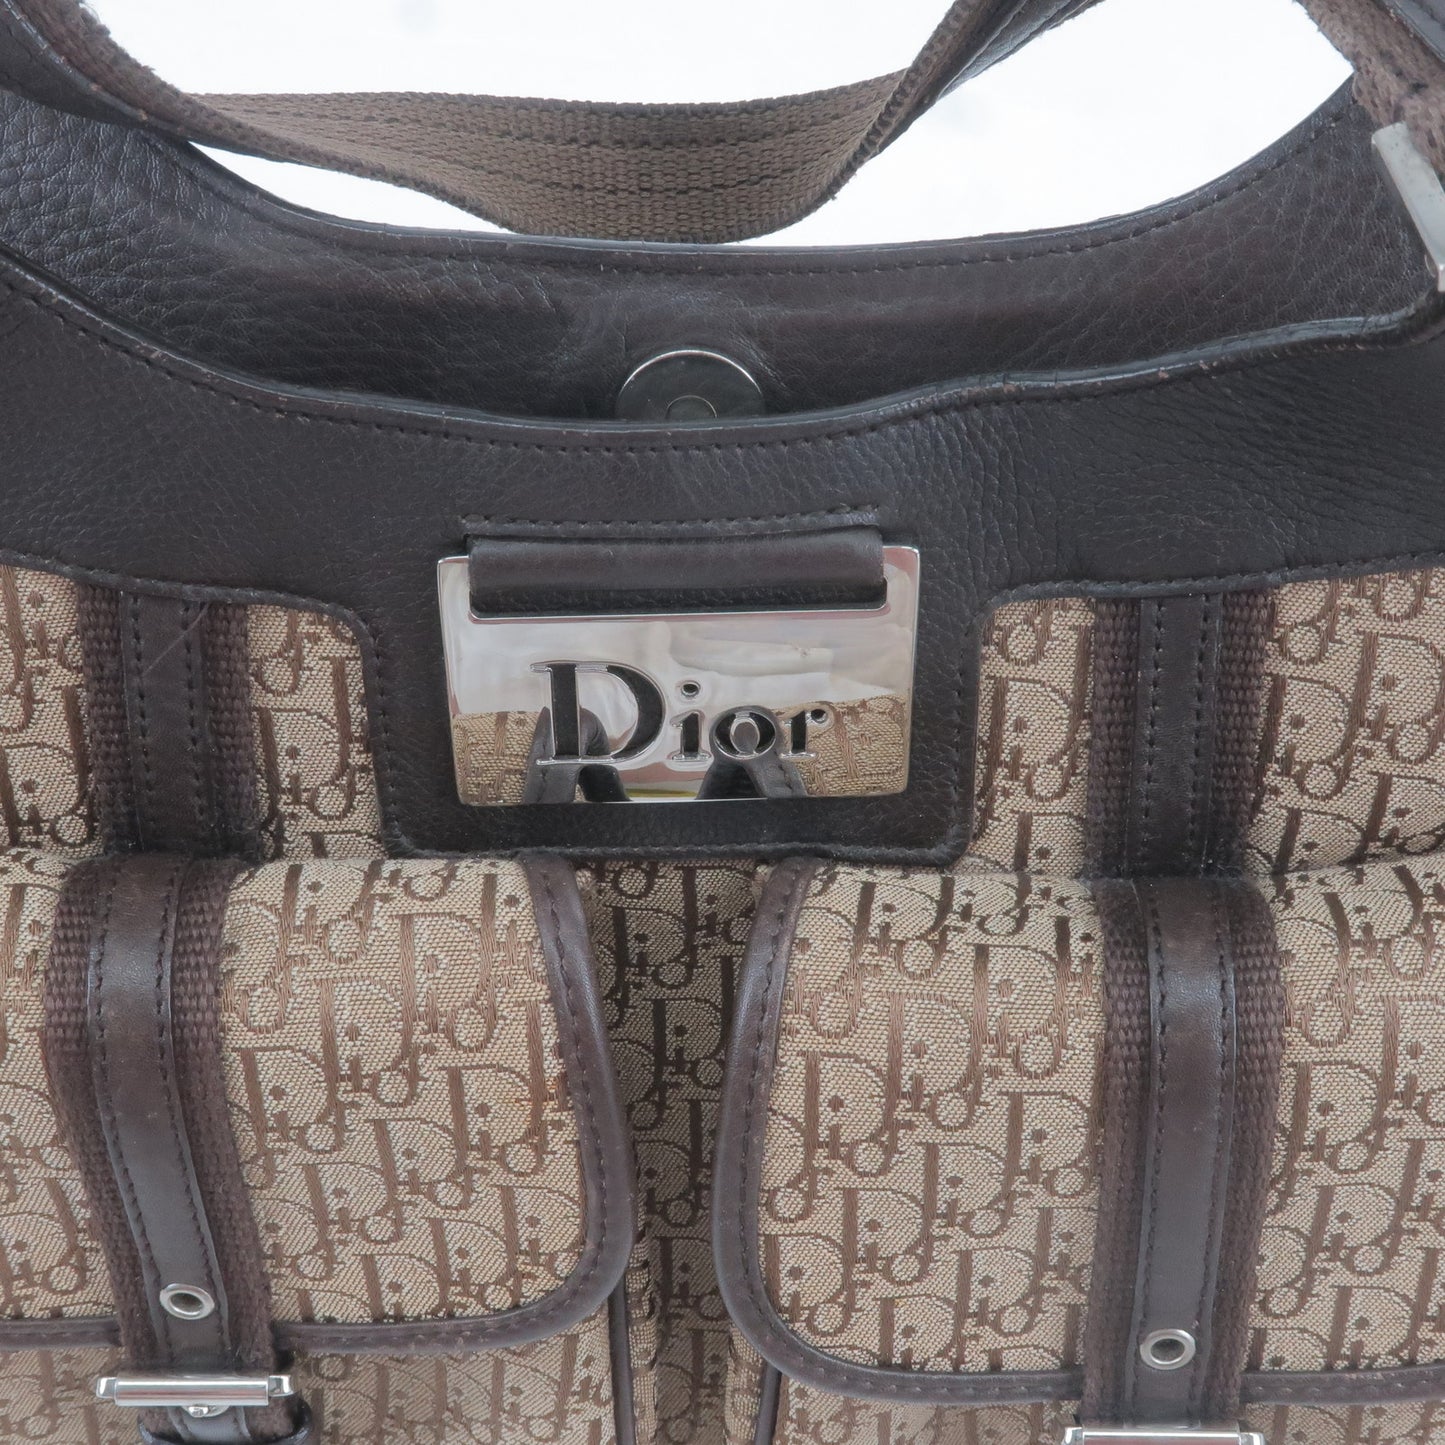 Christian Dior Trotter Canvas Leather Shoulder Bag Beige